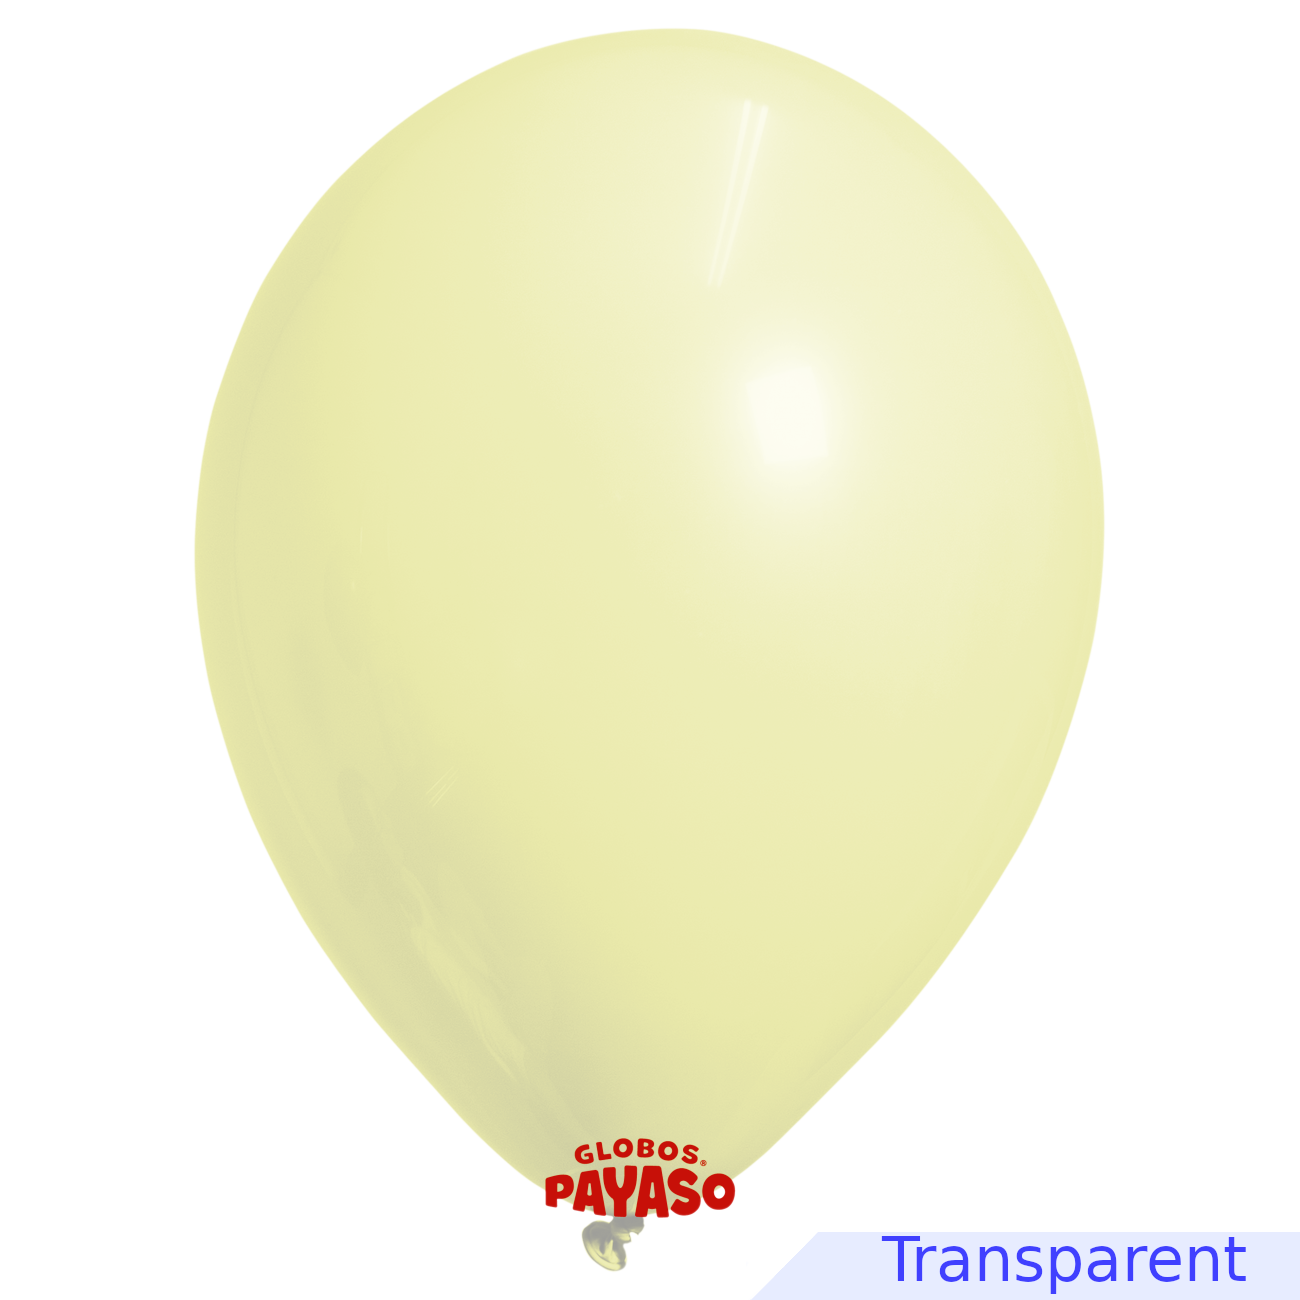 Globos Payaso / Unique 12" Yellow Soap Bubble Balloon